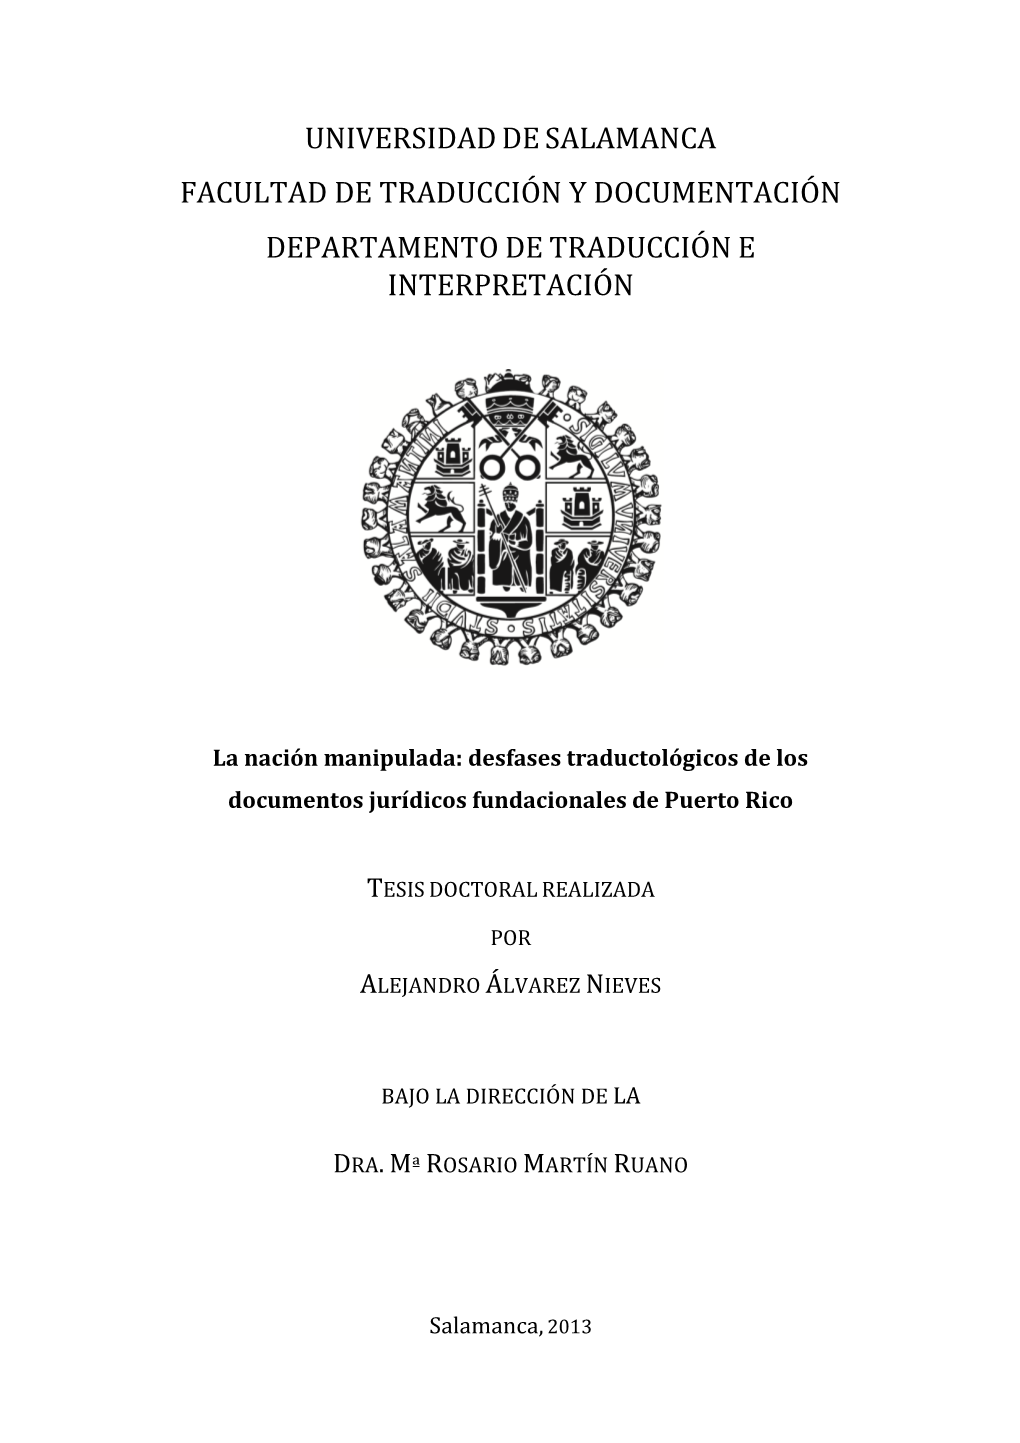 Desfases Traductológicos De Los Documentos Jurídicos Fundacionales De Puerto Rico